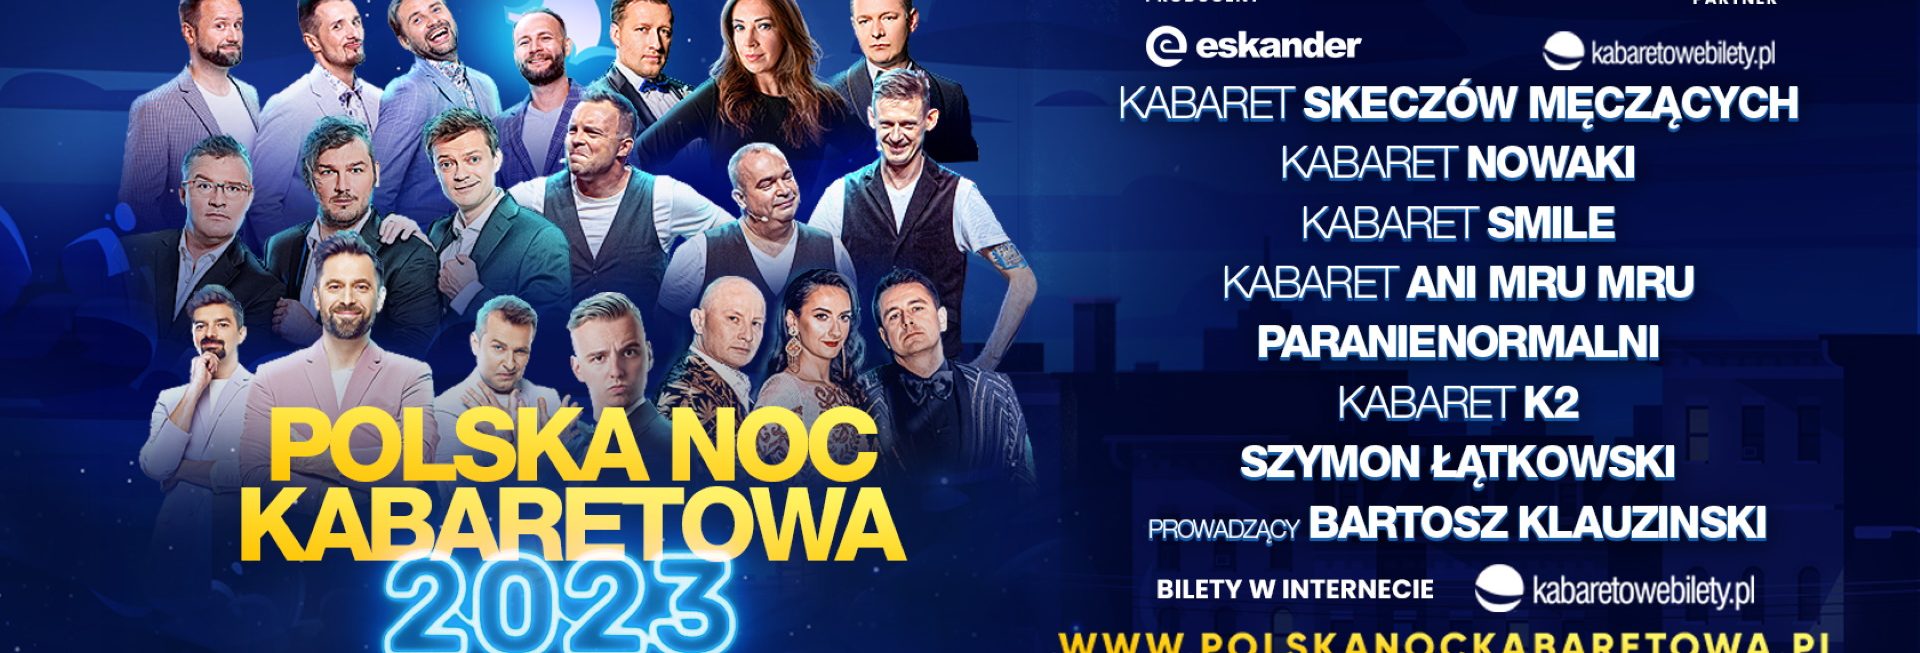 Plakat zapraszający na Polską Noc Kabaretową 2023.